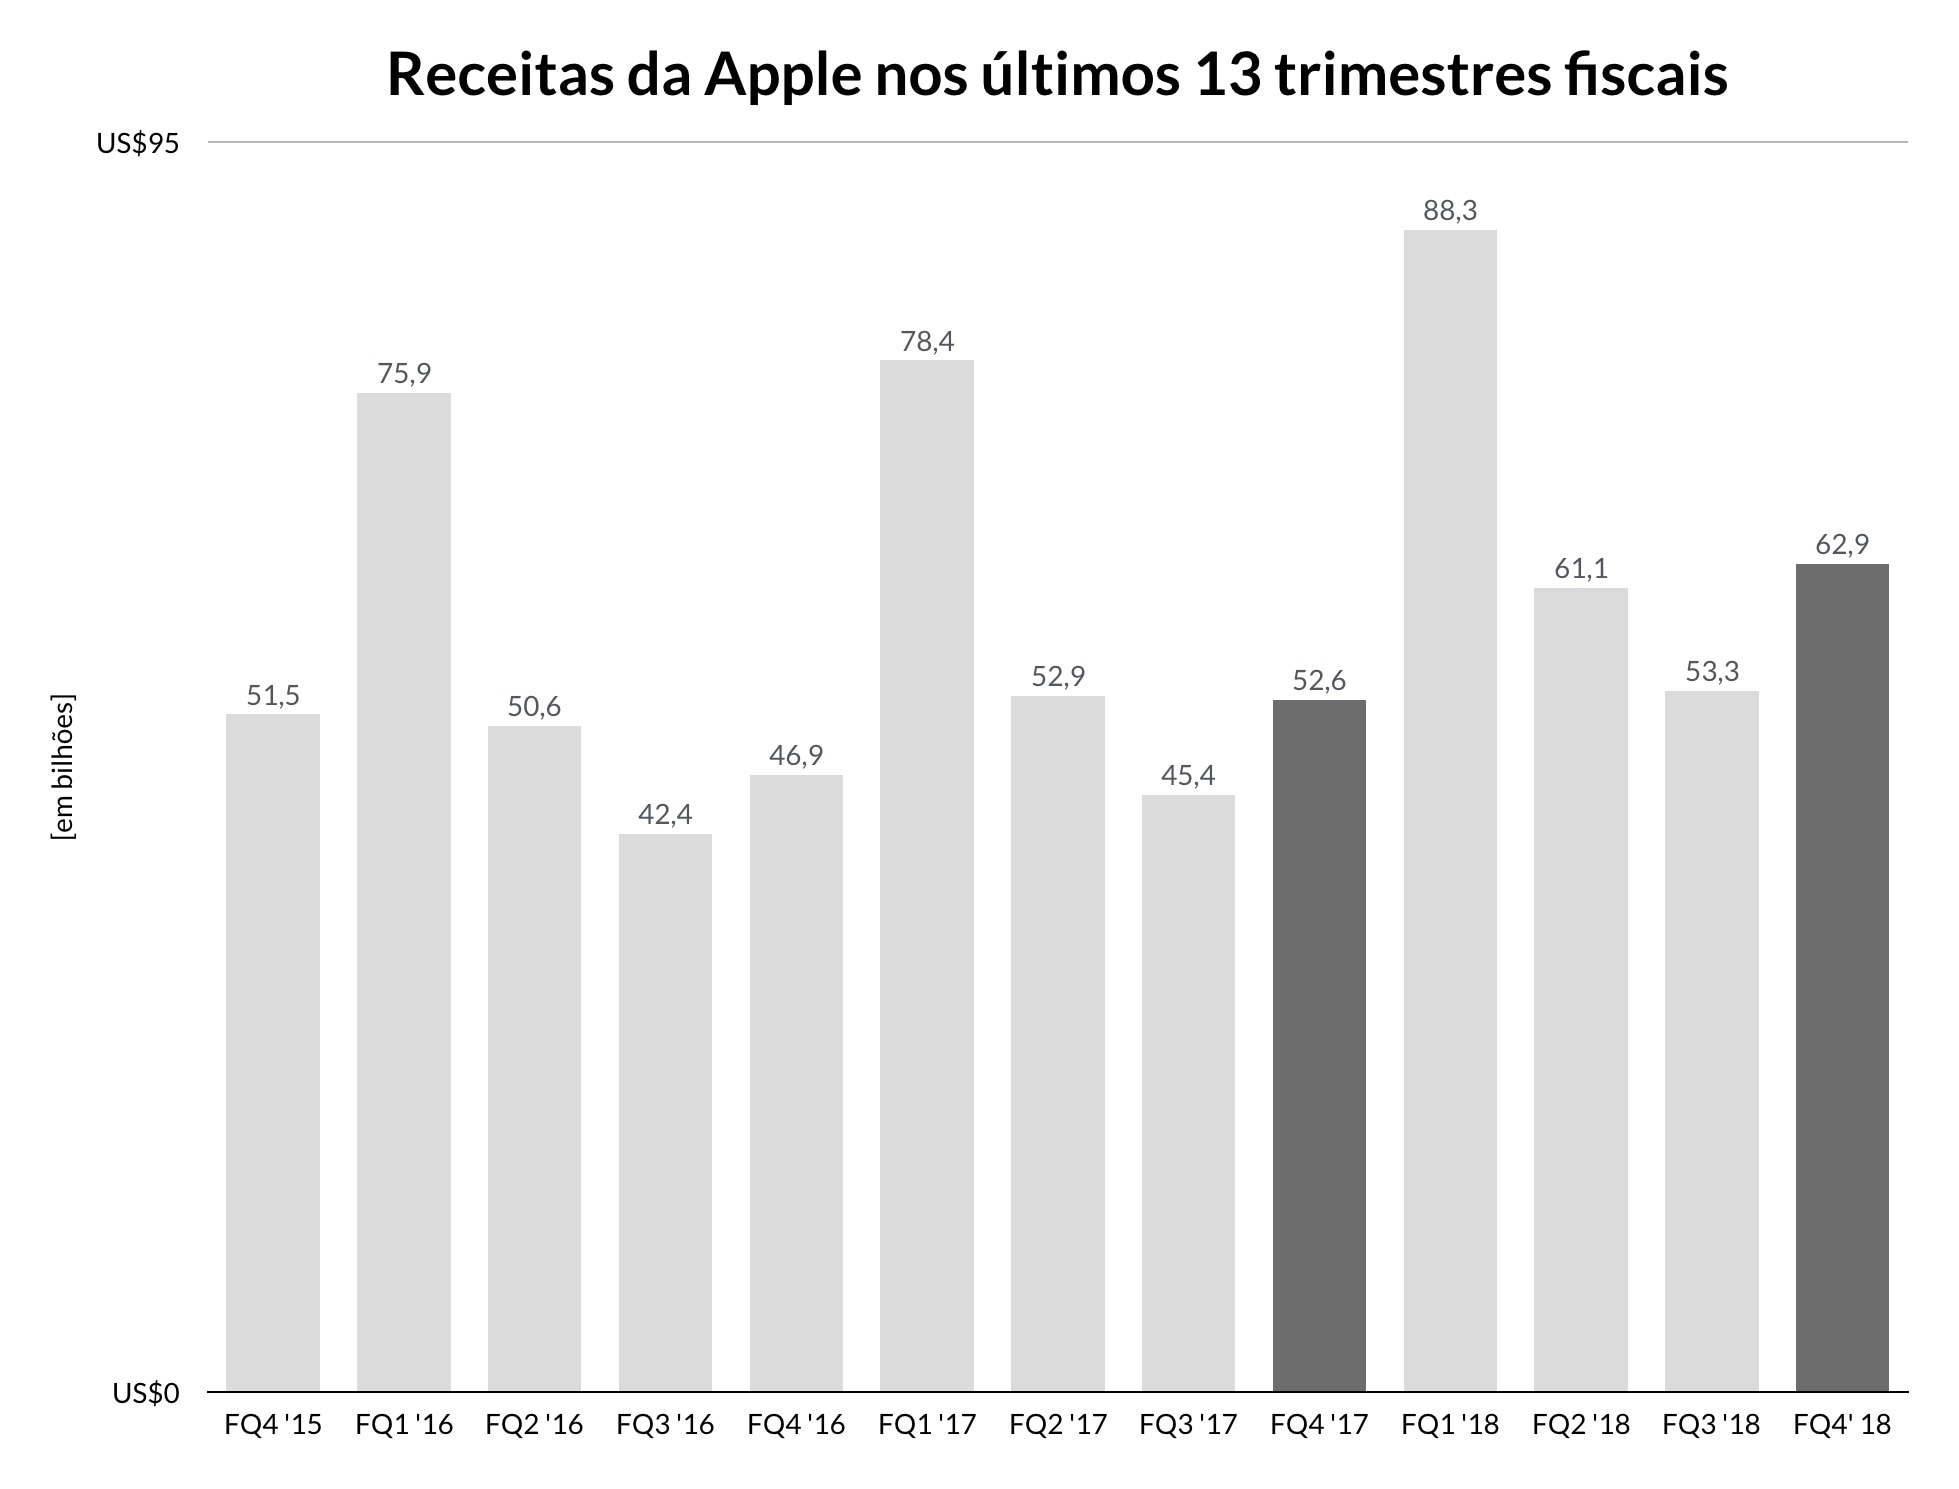 Gráfico do quarto trimestre fiscal de 2018 da Apple